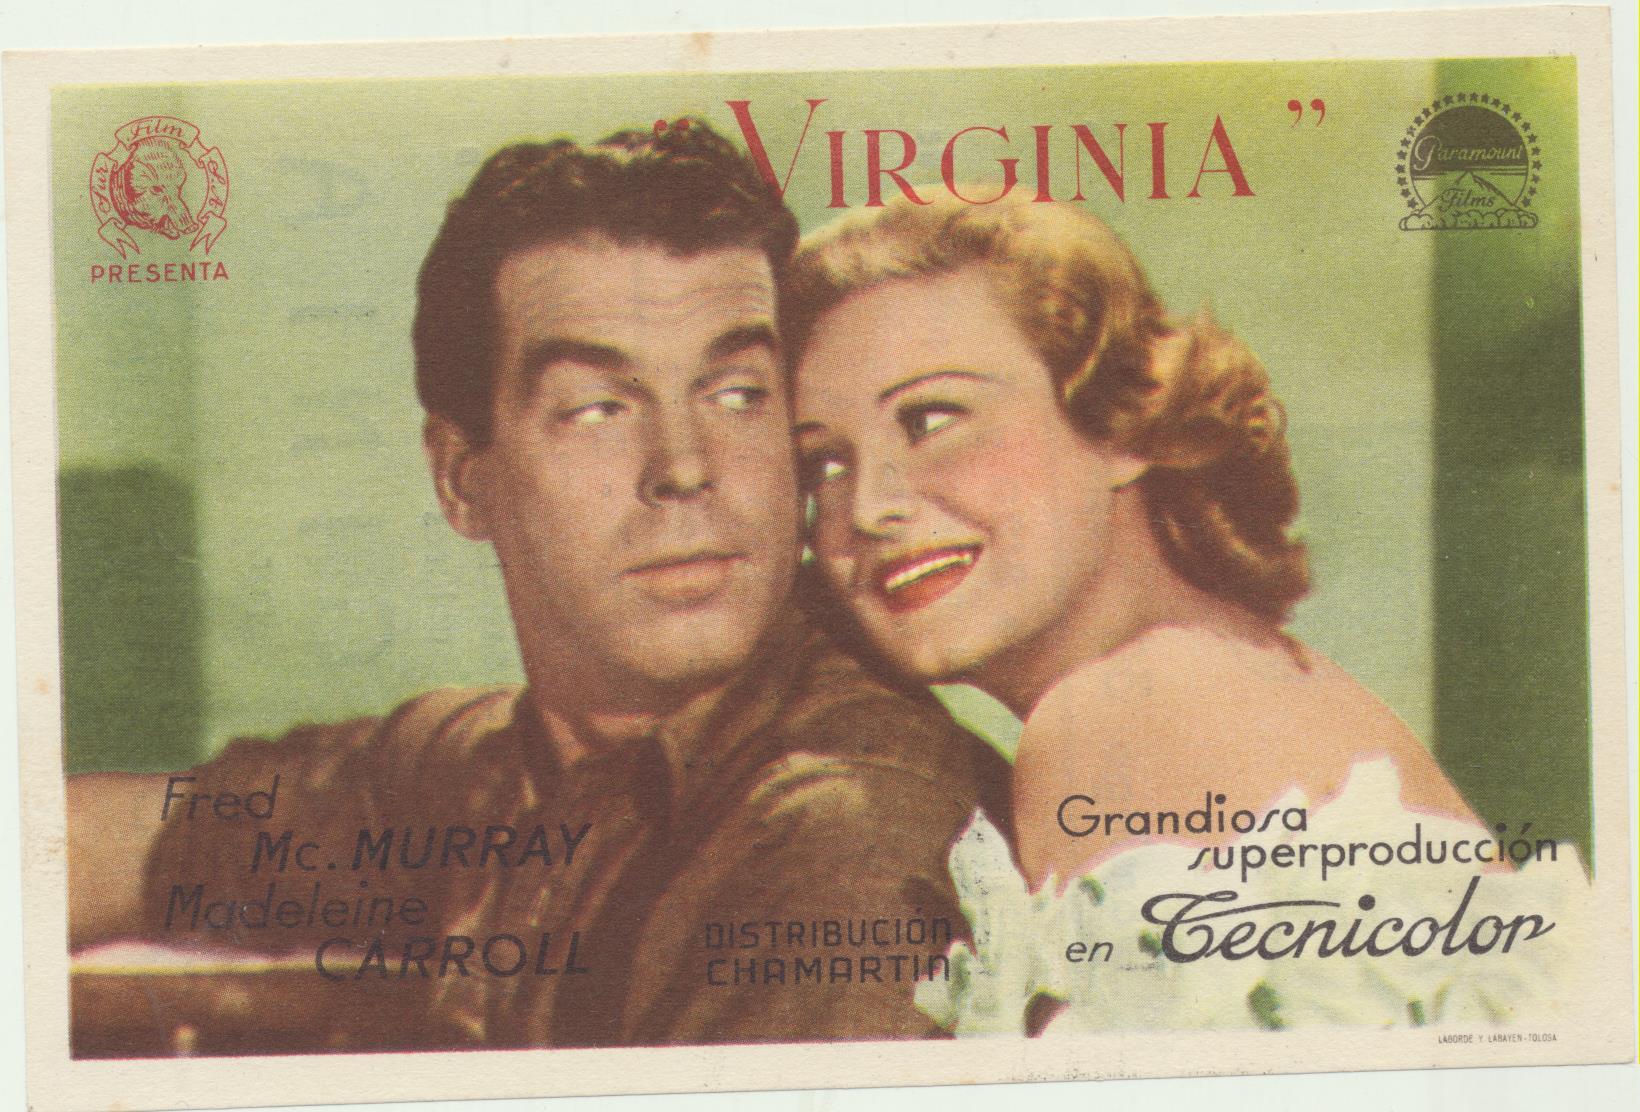 Virginia. Sencillo de Paramount. Teatro Villamarta-Jerez 1945. ¡IMPECABLE!